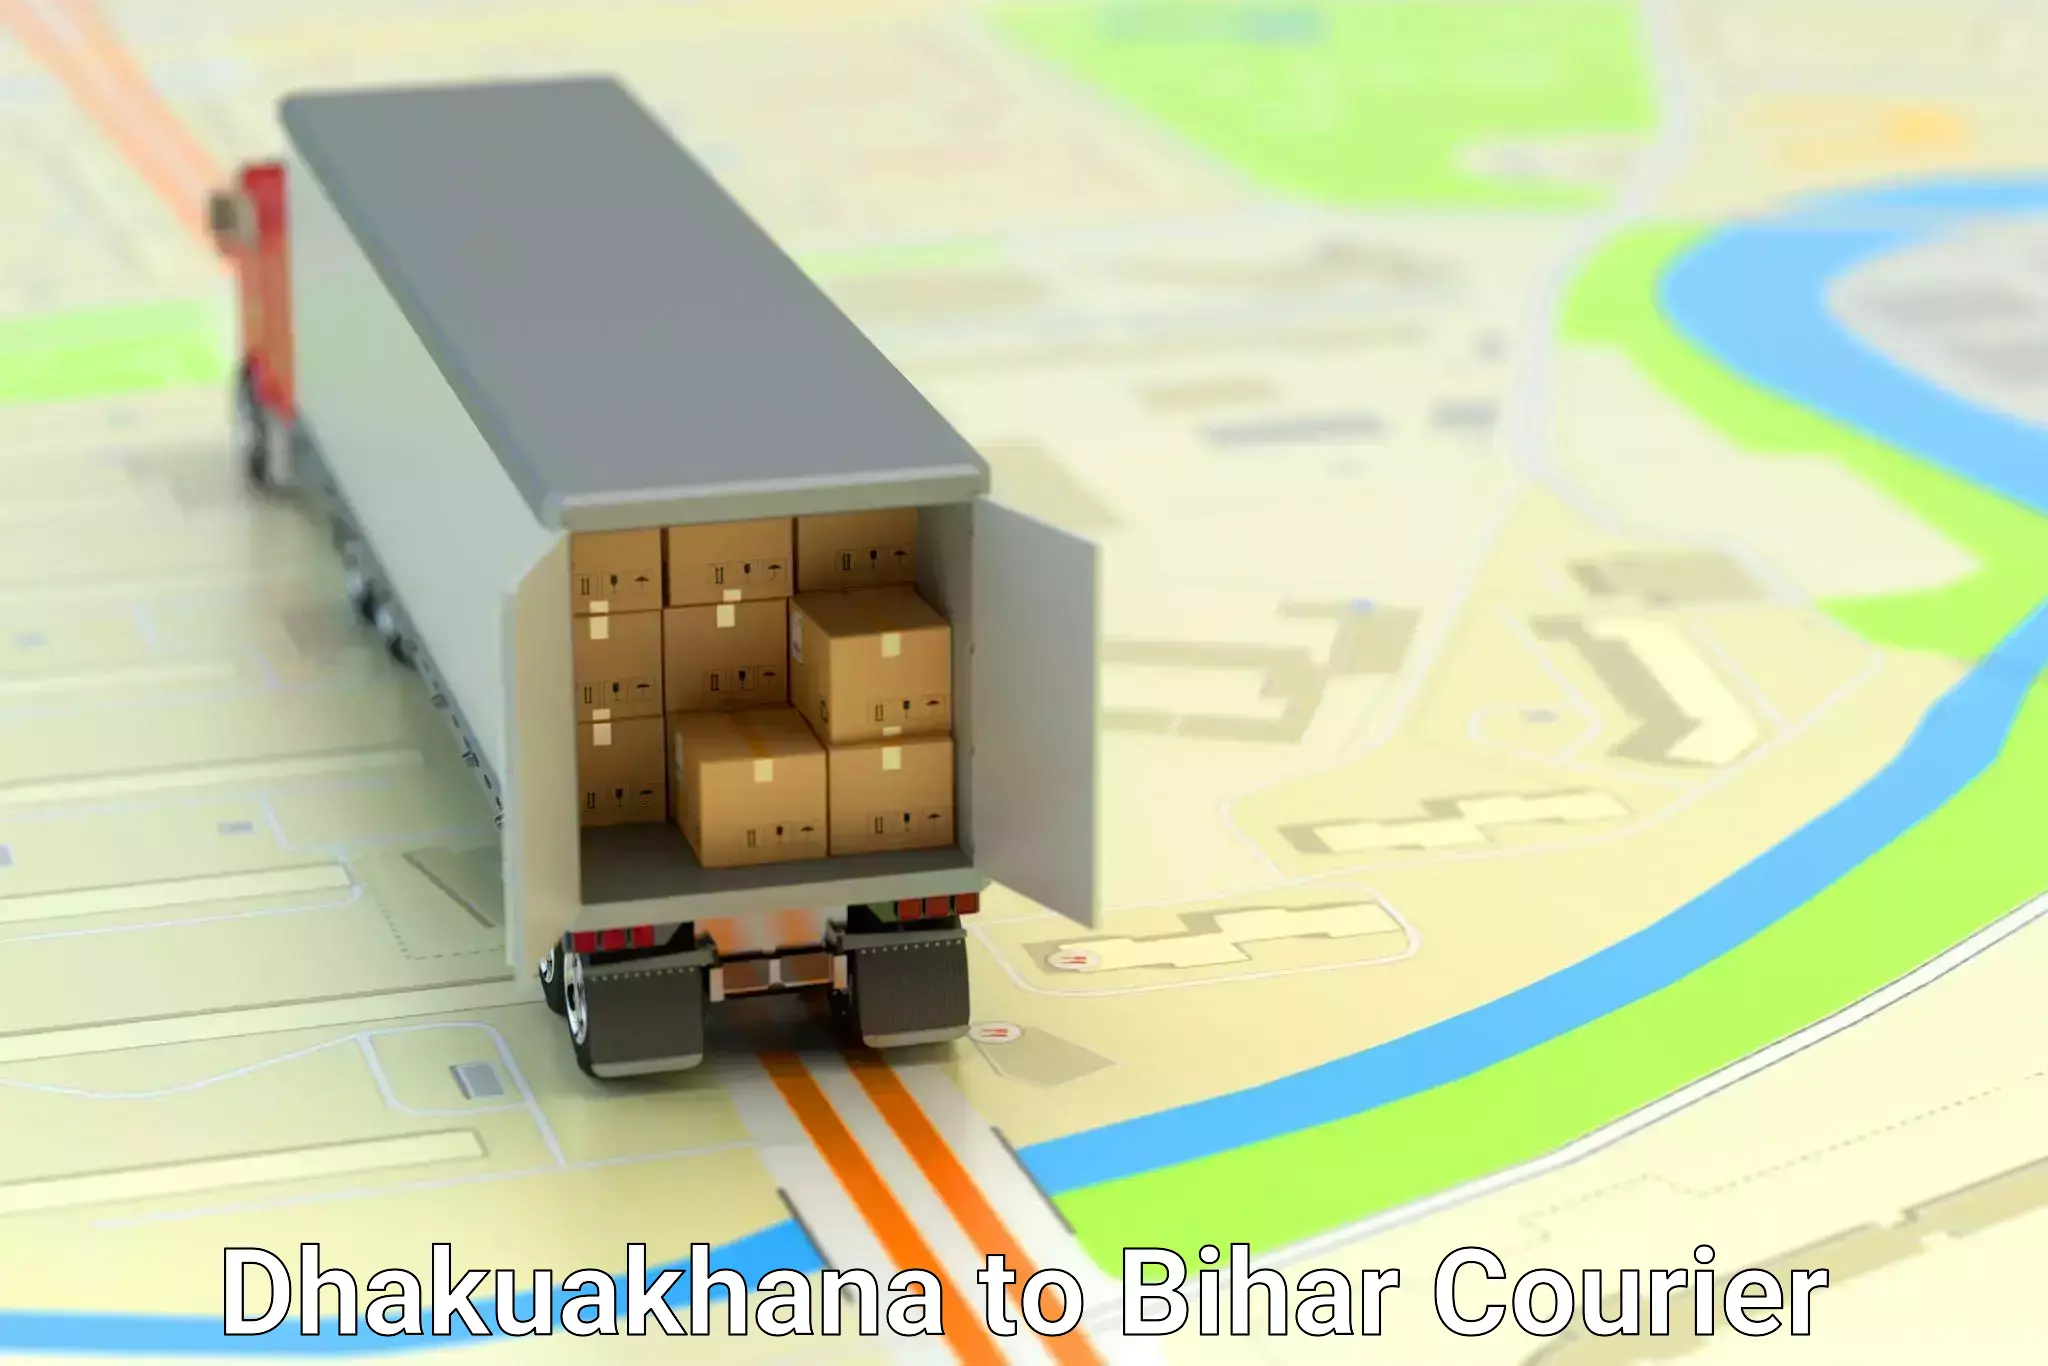 Smart shipping technology Dhakuakhana to Bagaha